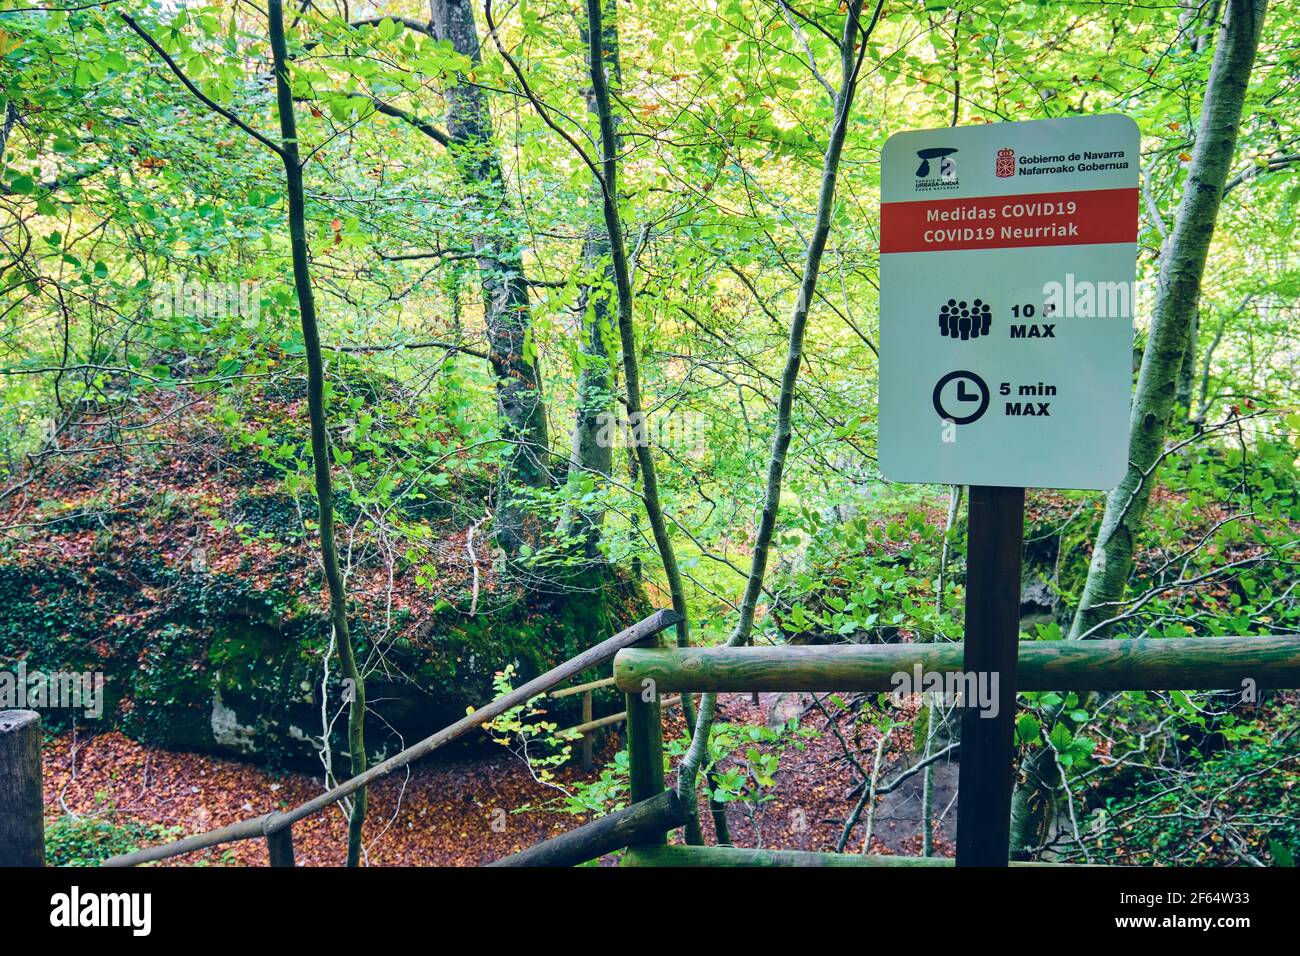 Señal con COVID 19 medidas cautelares en un lugar natural. Fuente del río Urederra. Foto de stock